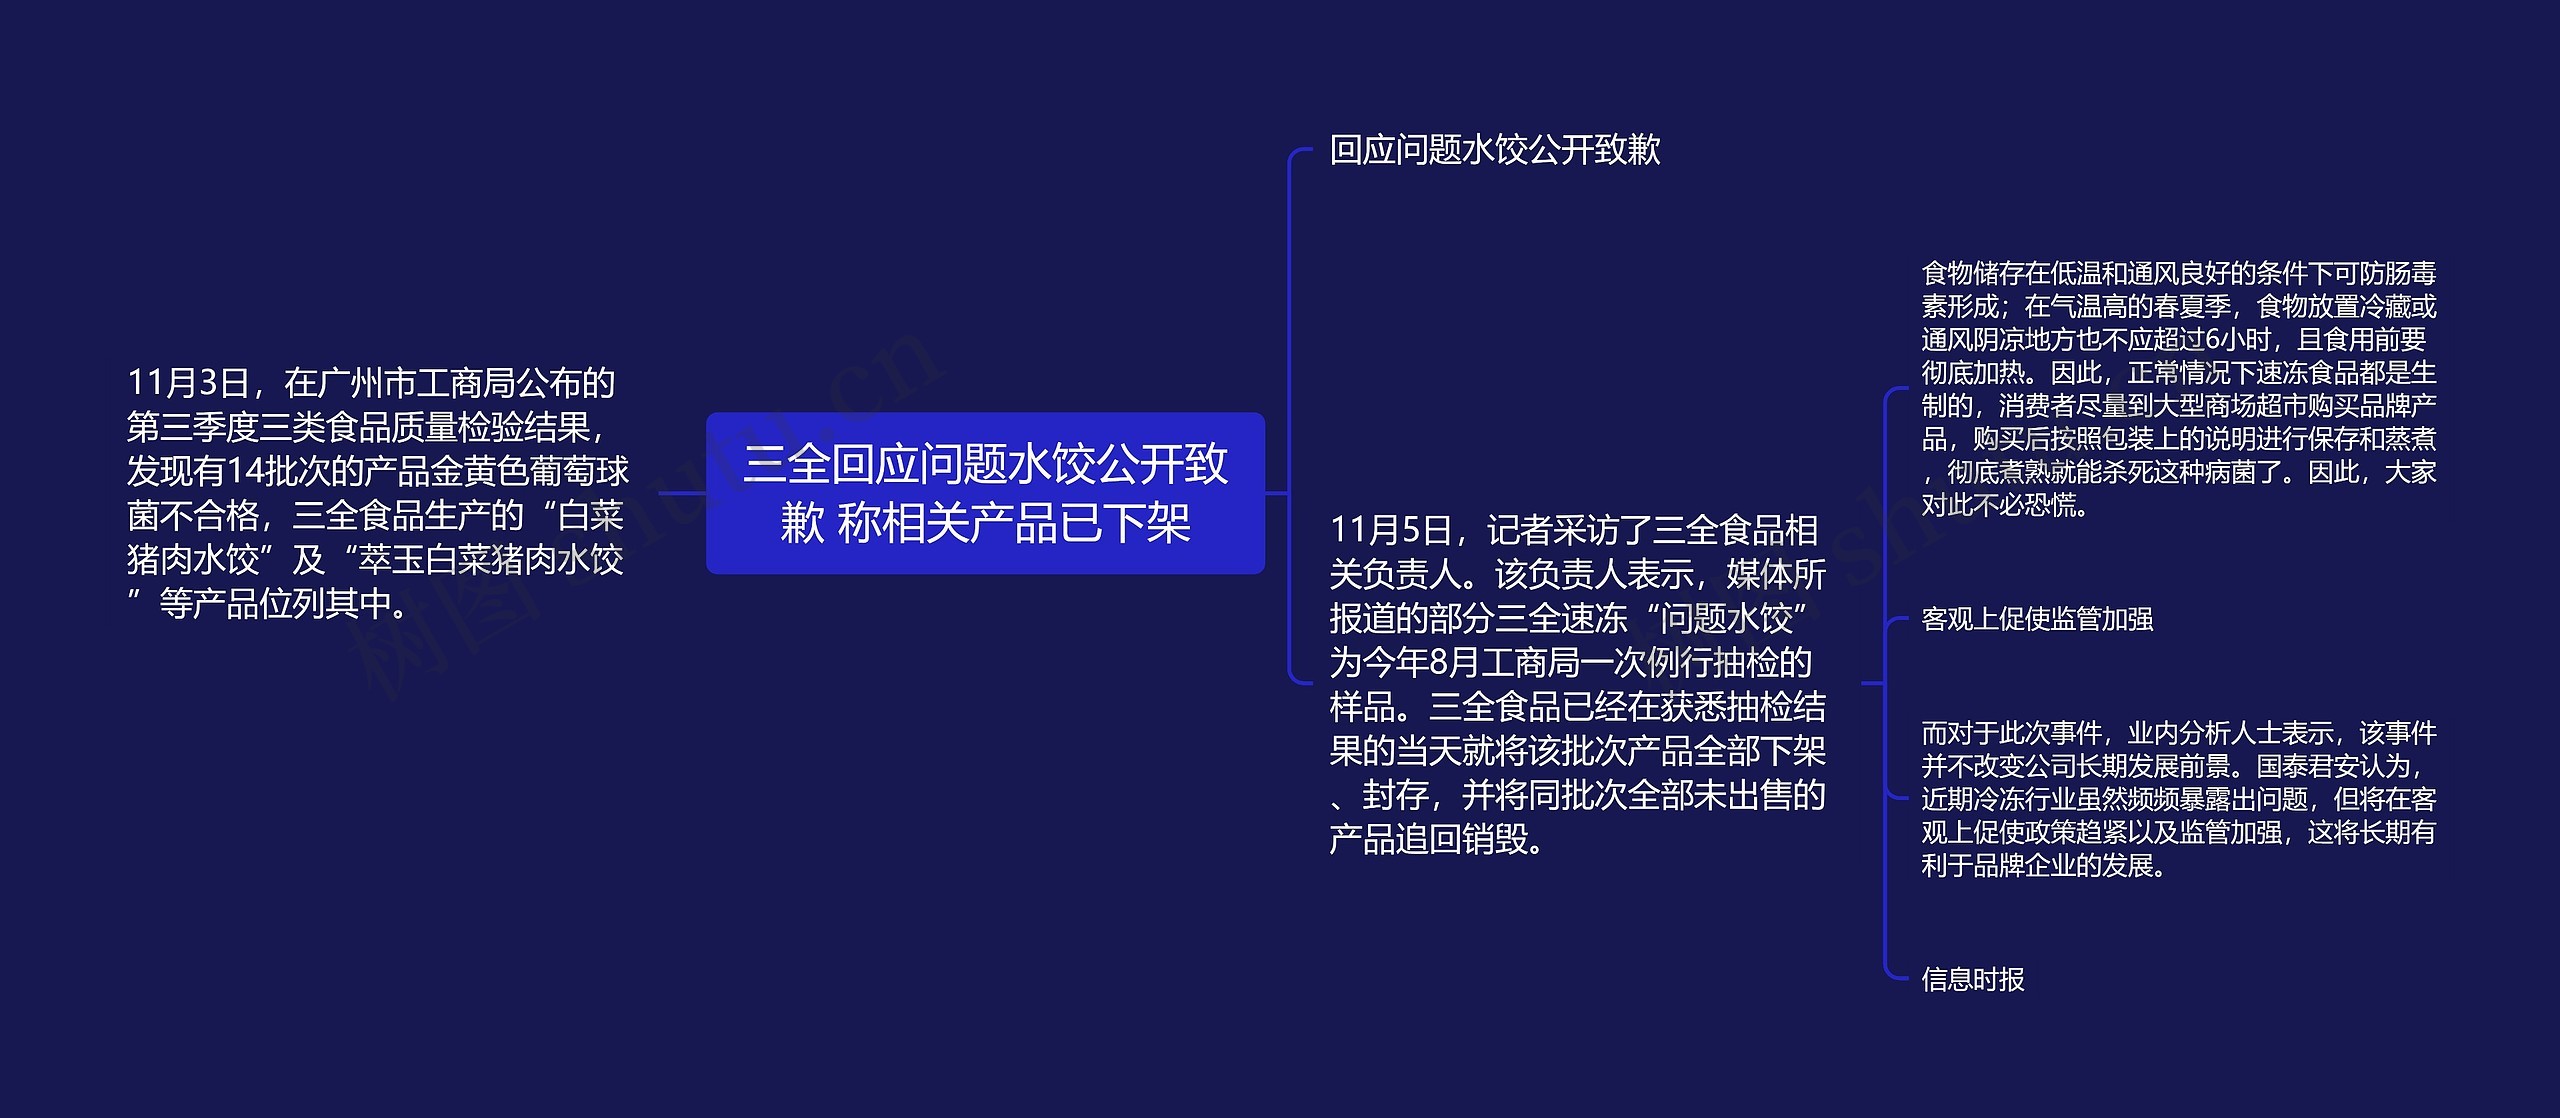 三全回应问题水饺公开致歉 称相关产品已下架